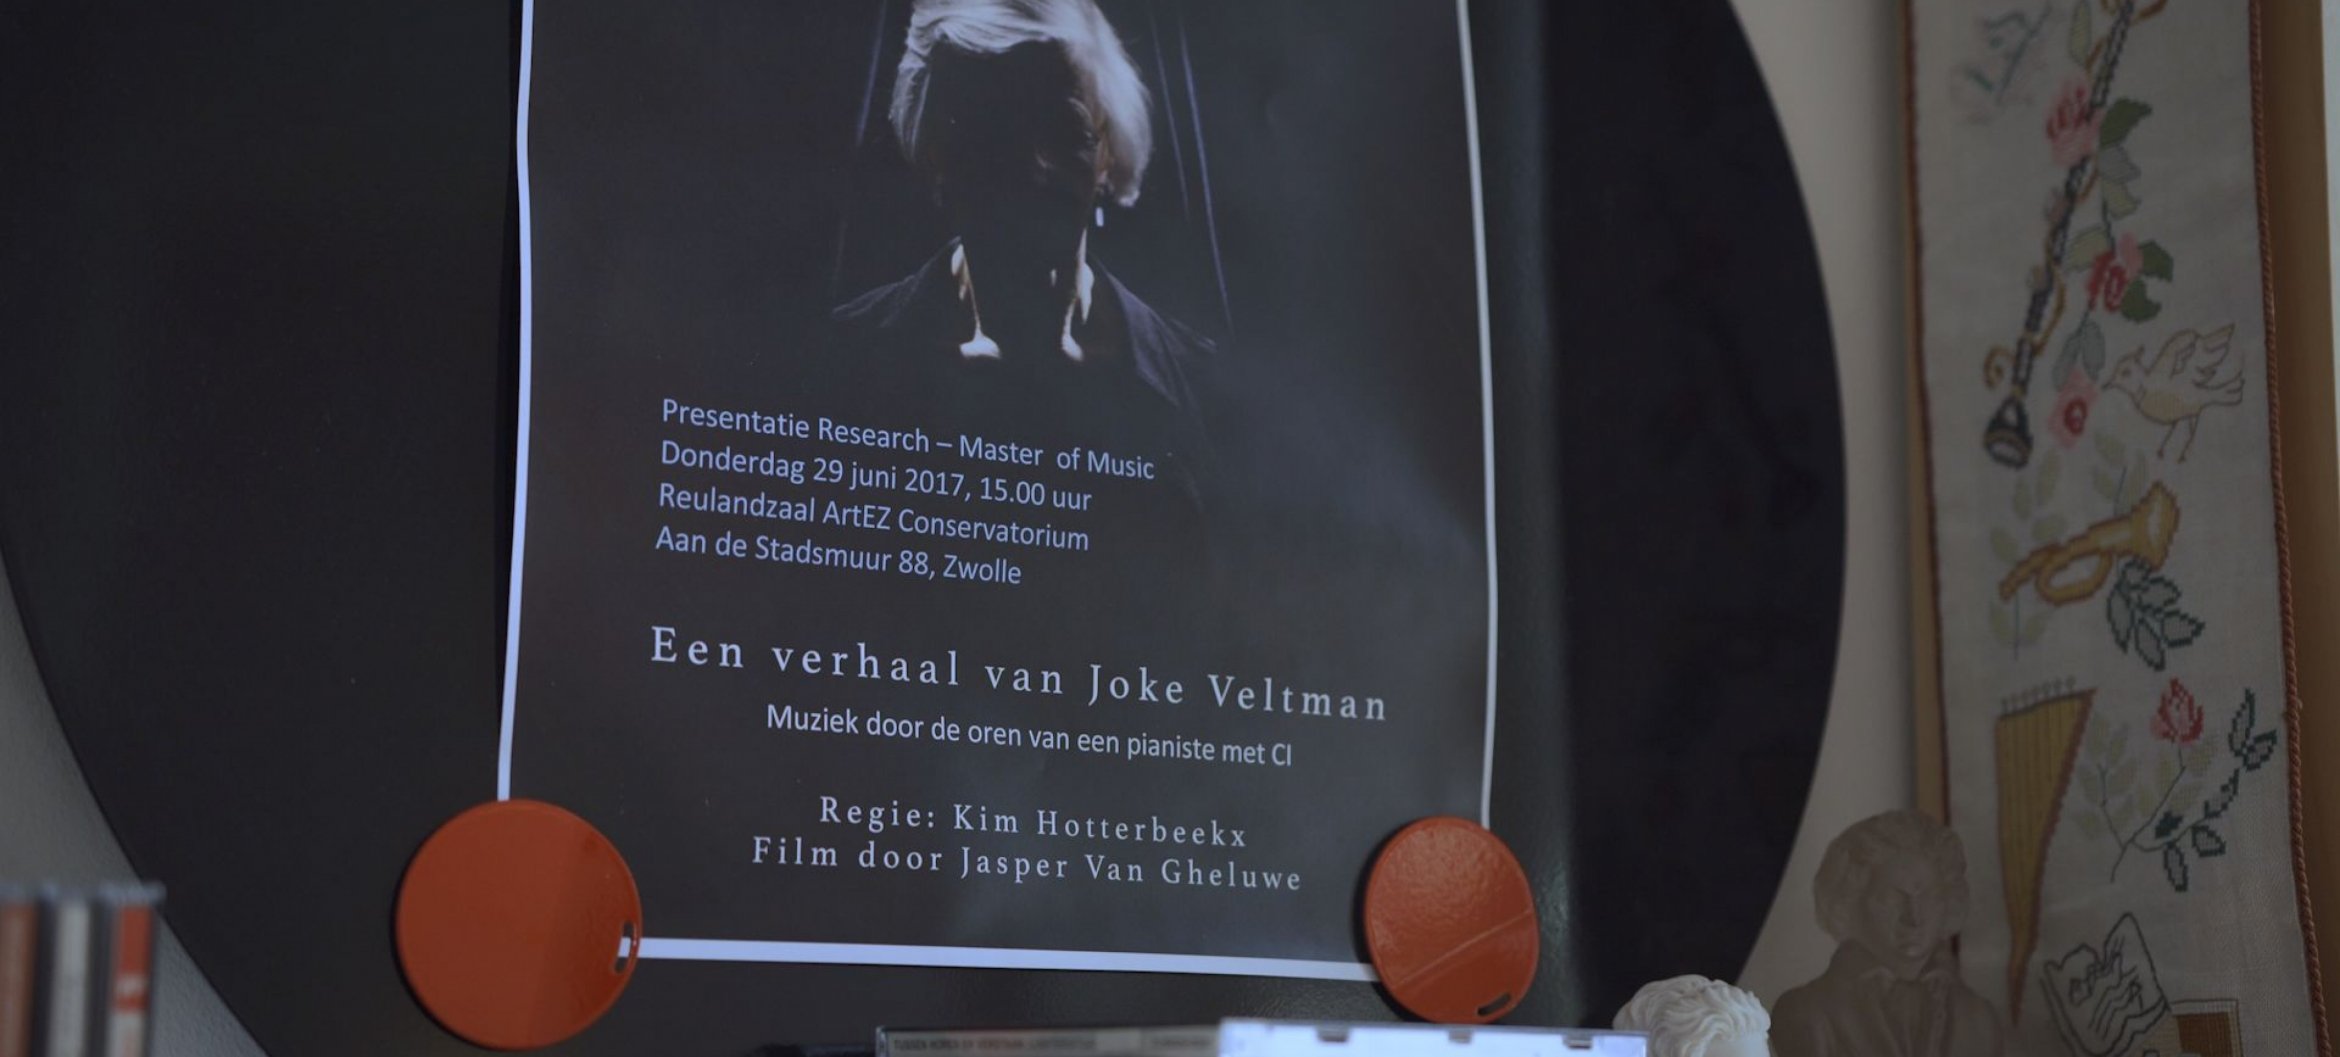 Joke Veltman deed een research master bij het ArtEZ Conservatorium in Zwolle.